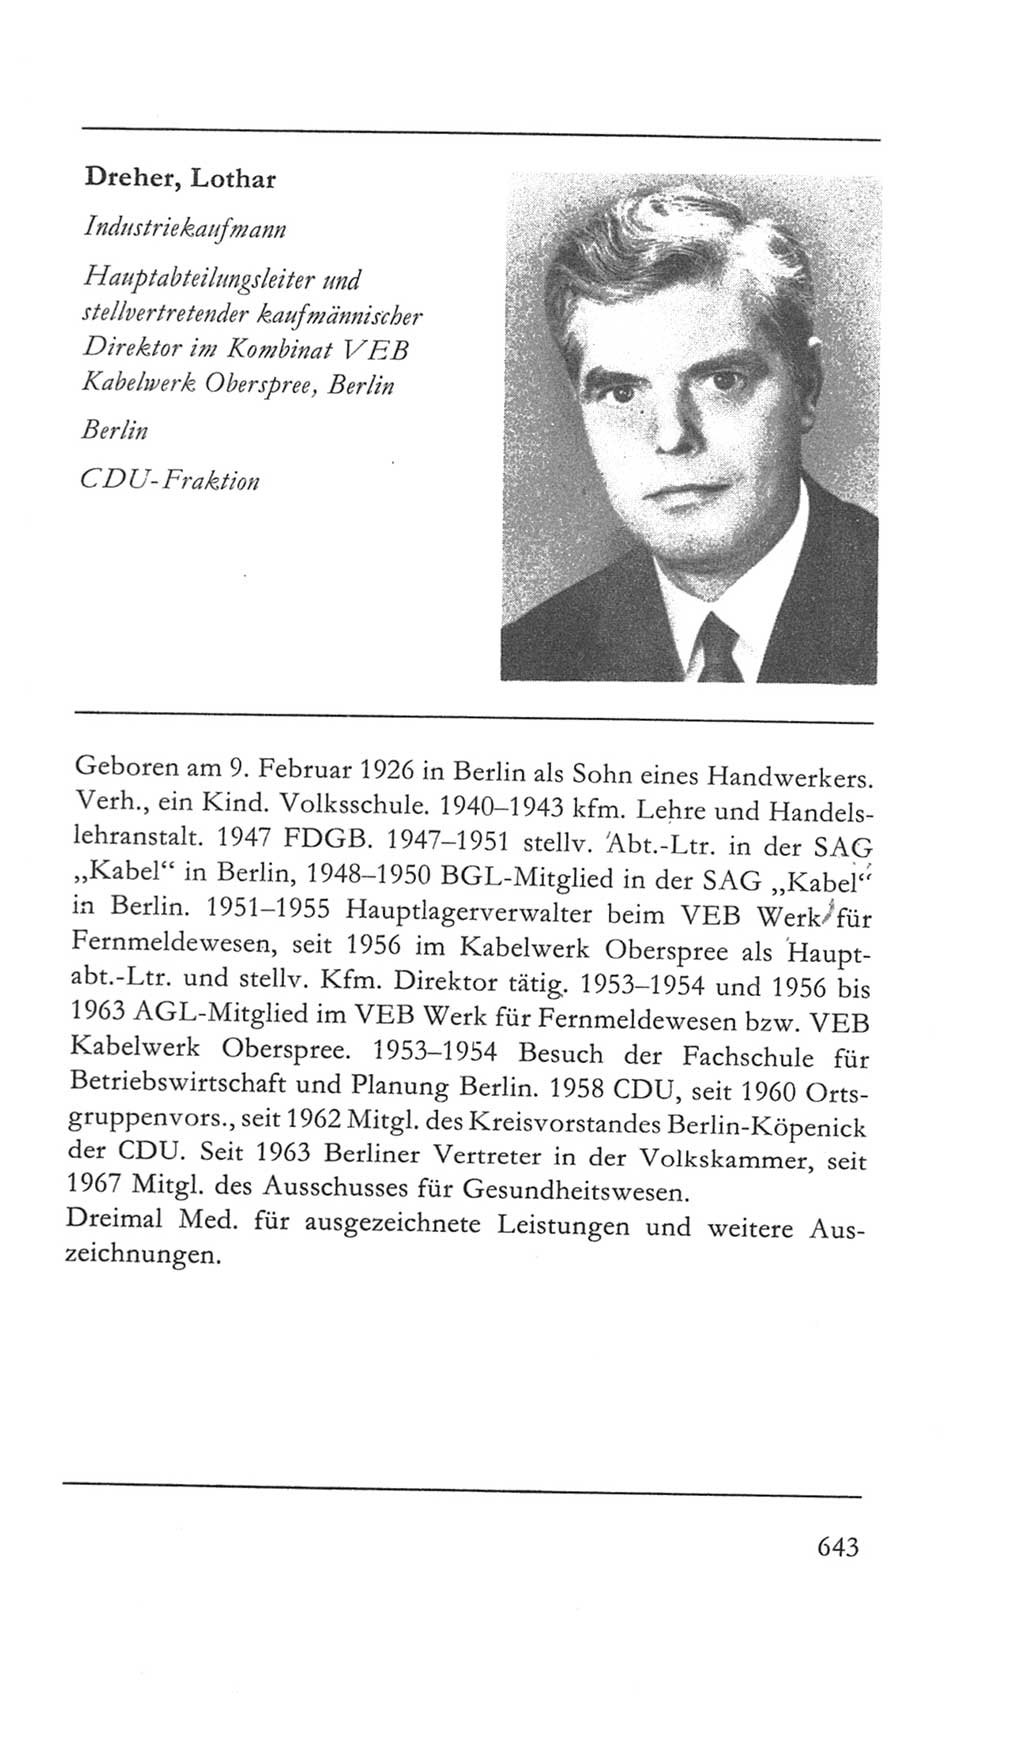 Volkskammer (VK) der Deutschen Demokratischen Republik (DDR) 5. Wahlperiode 1967-1971, Seite 643 (VK. DDR 5. WP. 1967-1971, S. 643)